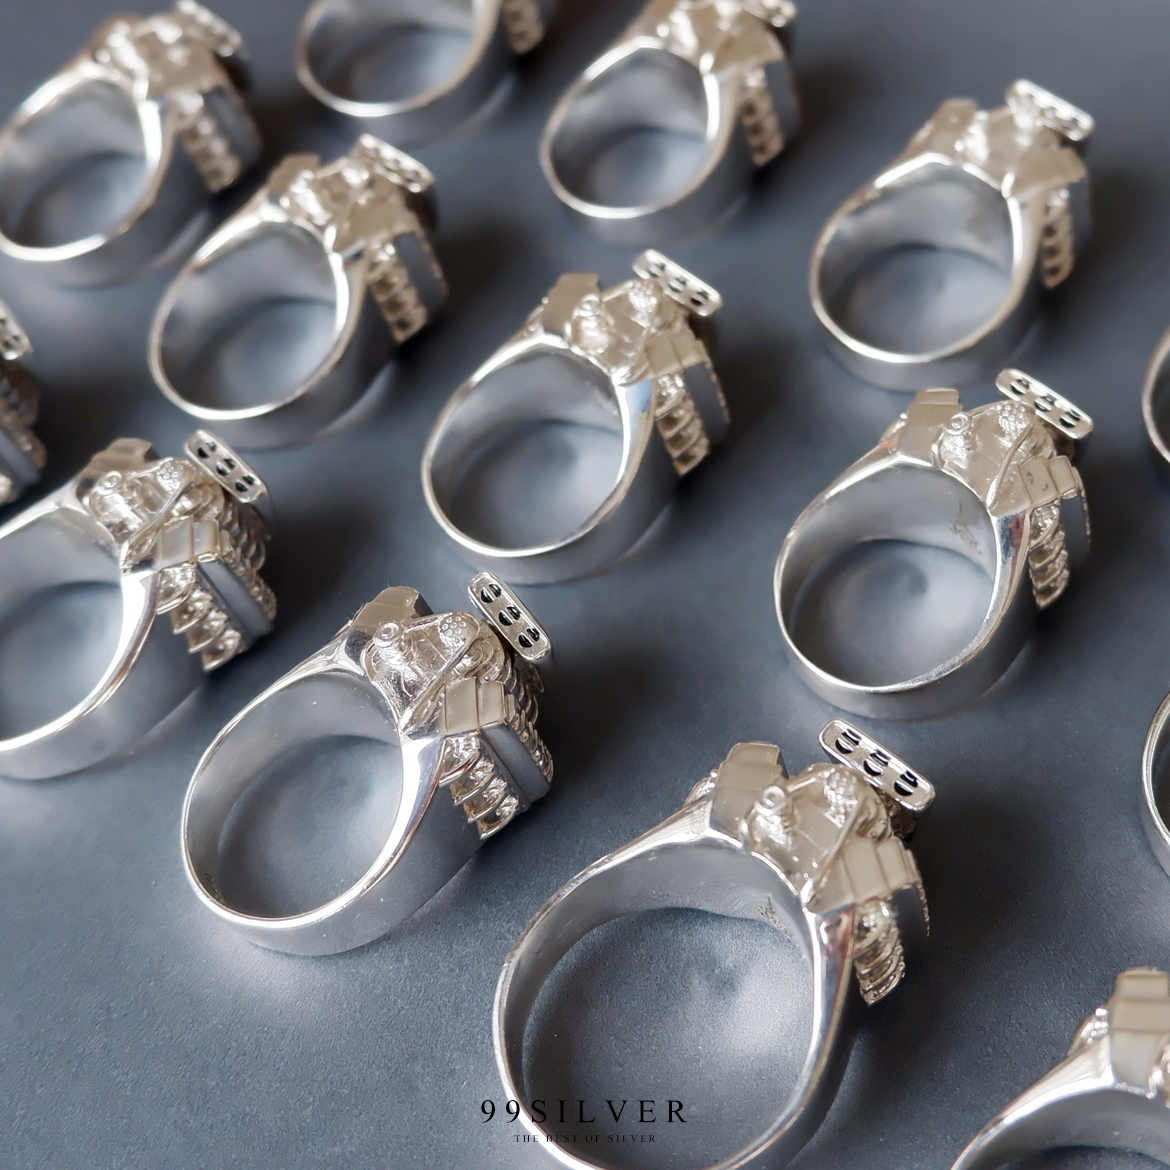 แหวนรุ่น เป็นรุ่นที่ทำตัวเรือนใหม่สร้างบล๊อคแหวน แกะ Wax พิเศษเฉพาะรุ่นนั้นๆ